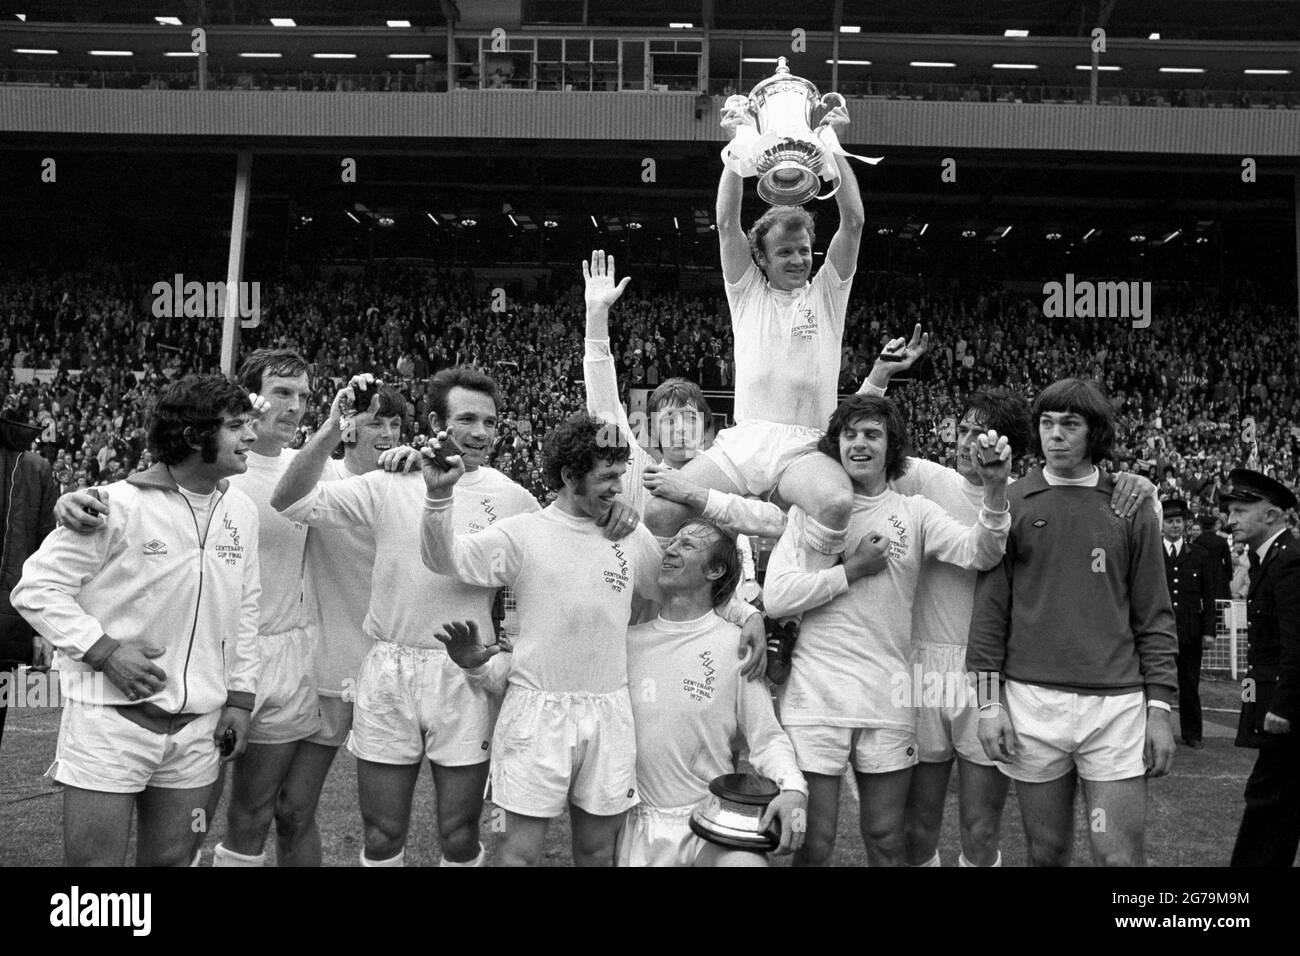 Aktenfoto vom 06-05-1972 von Mick Bates von Leeds United (links) mit Teamkollegen nach dem Gewinn des FA Cup im Jahr 1972. Ausgabedatum: Montag, 12. Juli 2021. Stockfoto